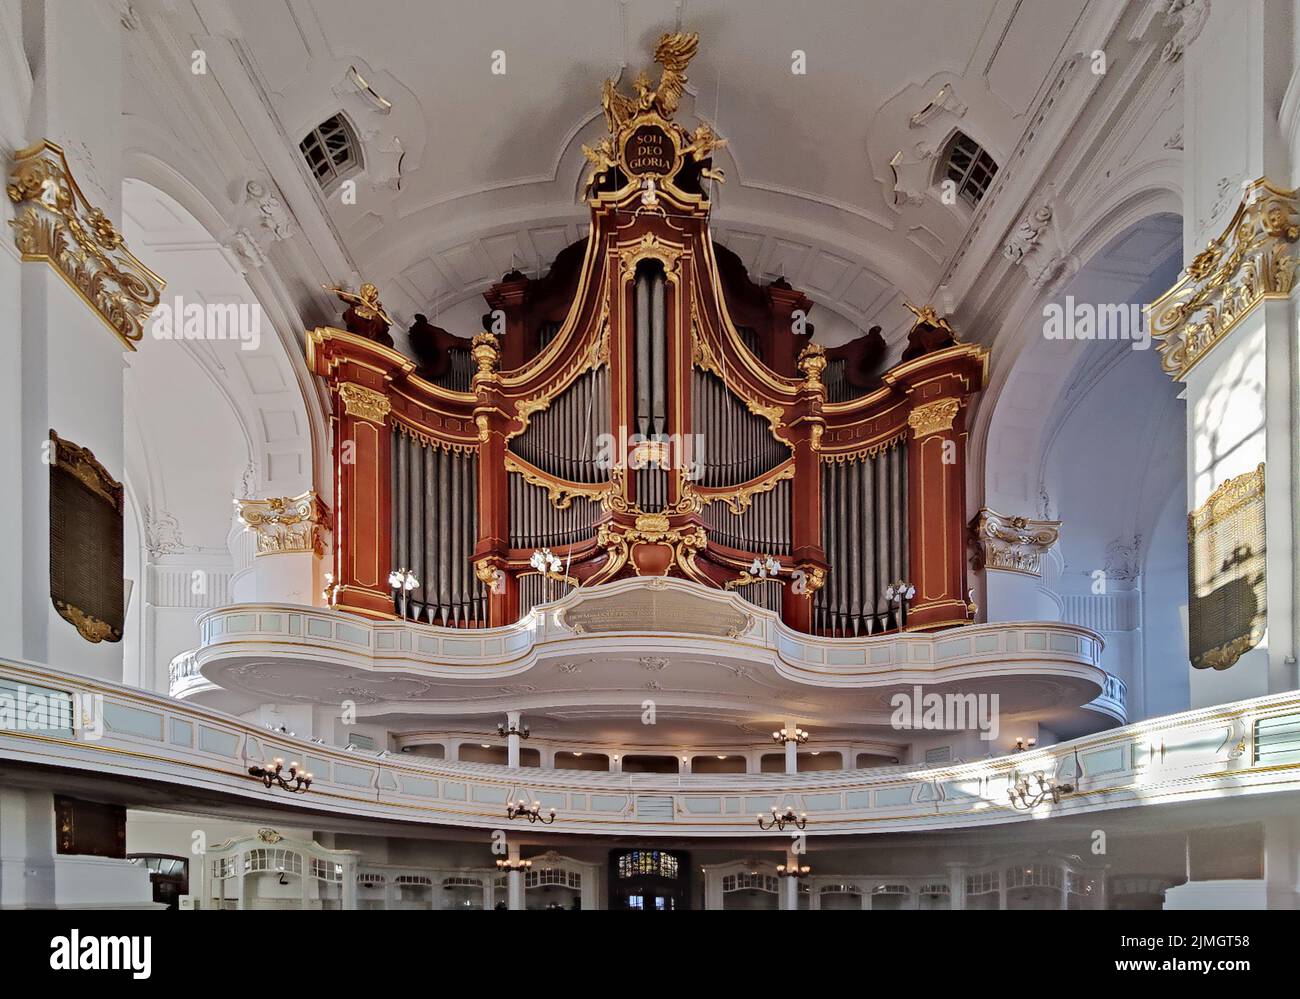 Organe principal de l'église principale de Saint-Michaelis, appelé Michel, Hambourg, Allemagne, Europe Banque D'Images